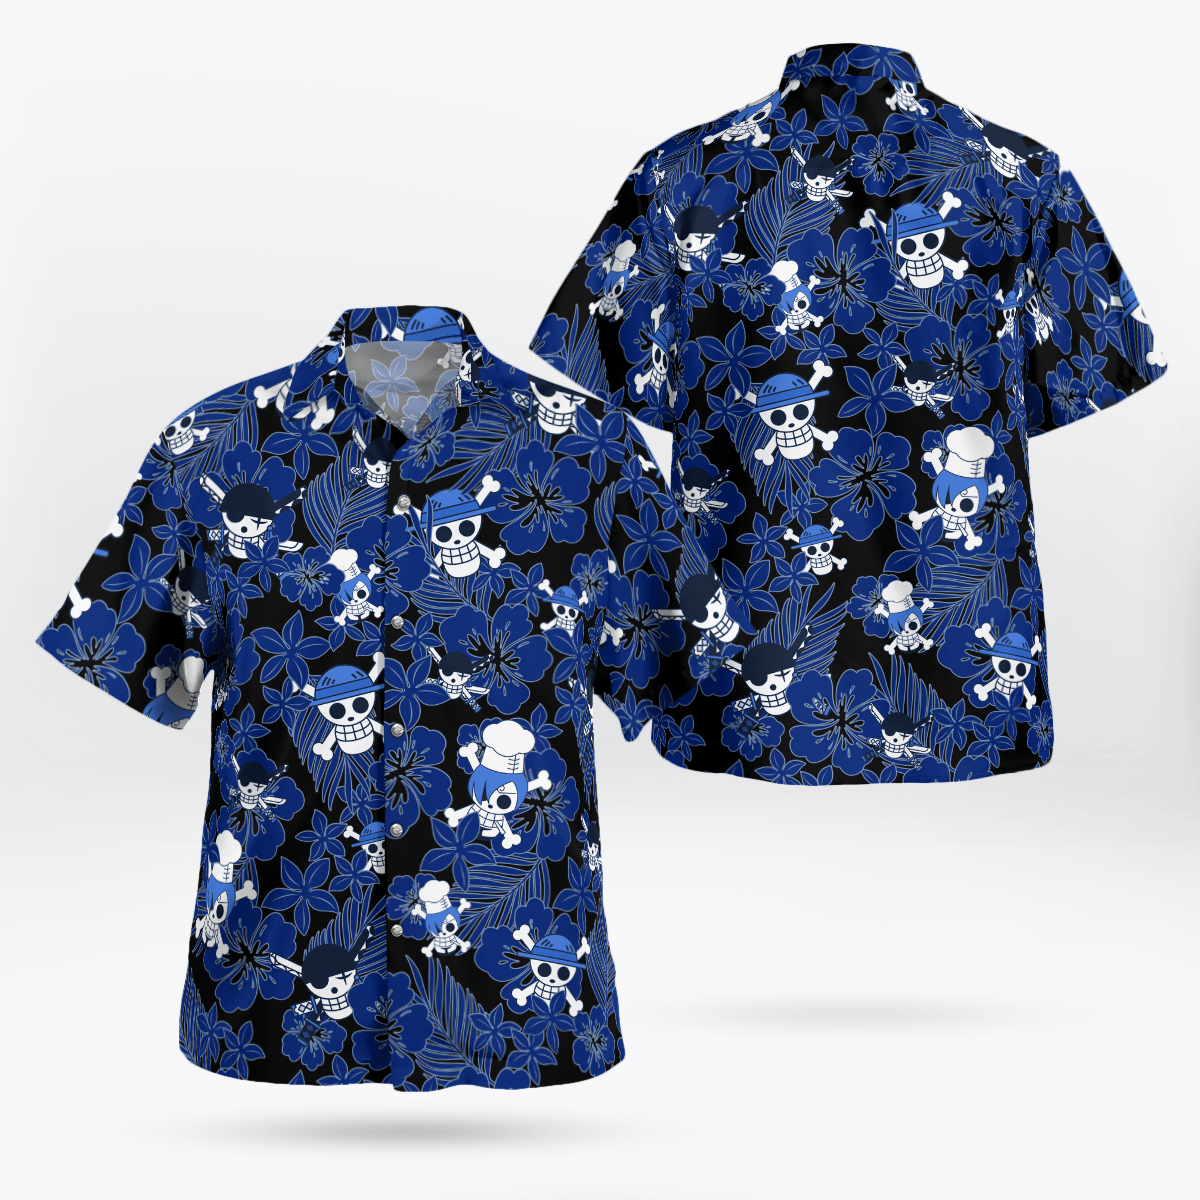 One piece Hawaiian shirt